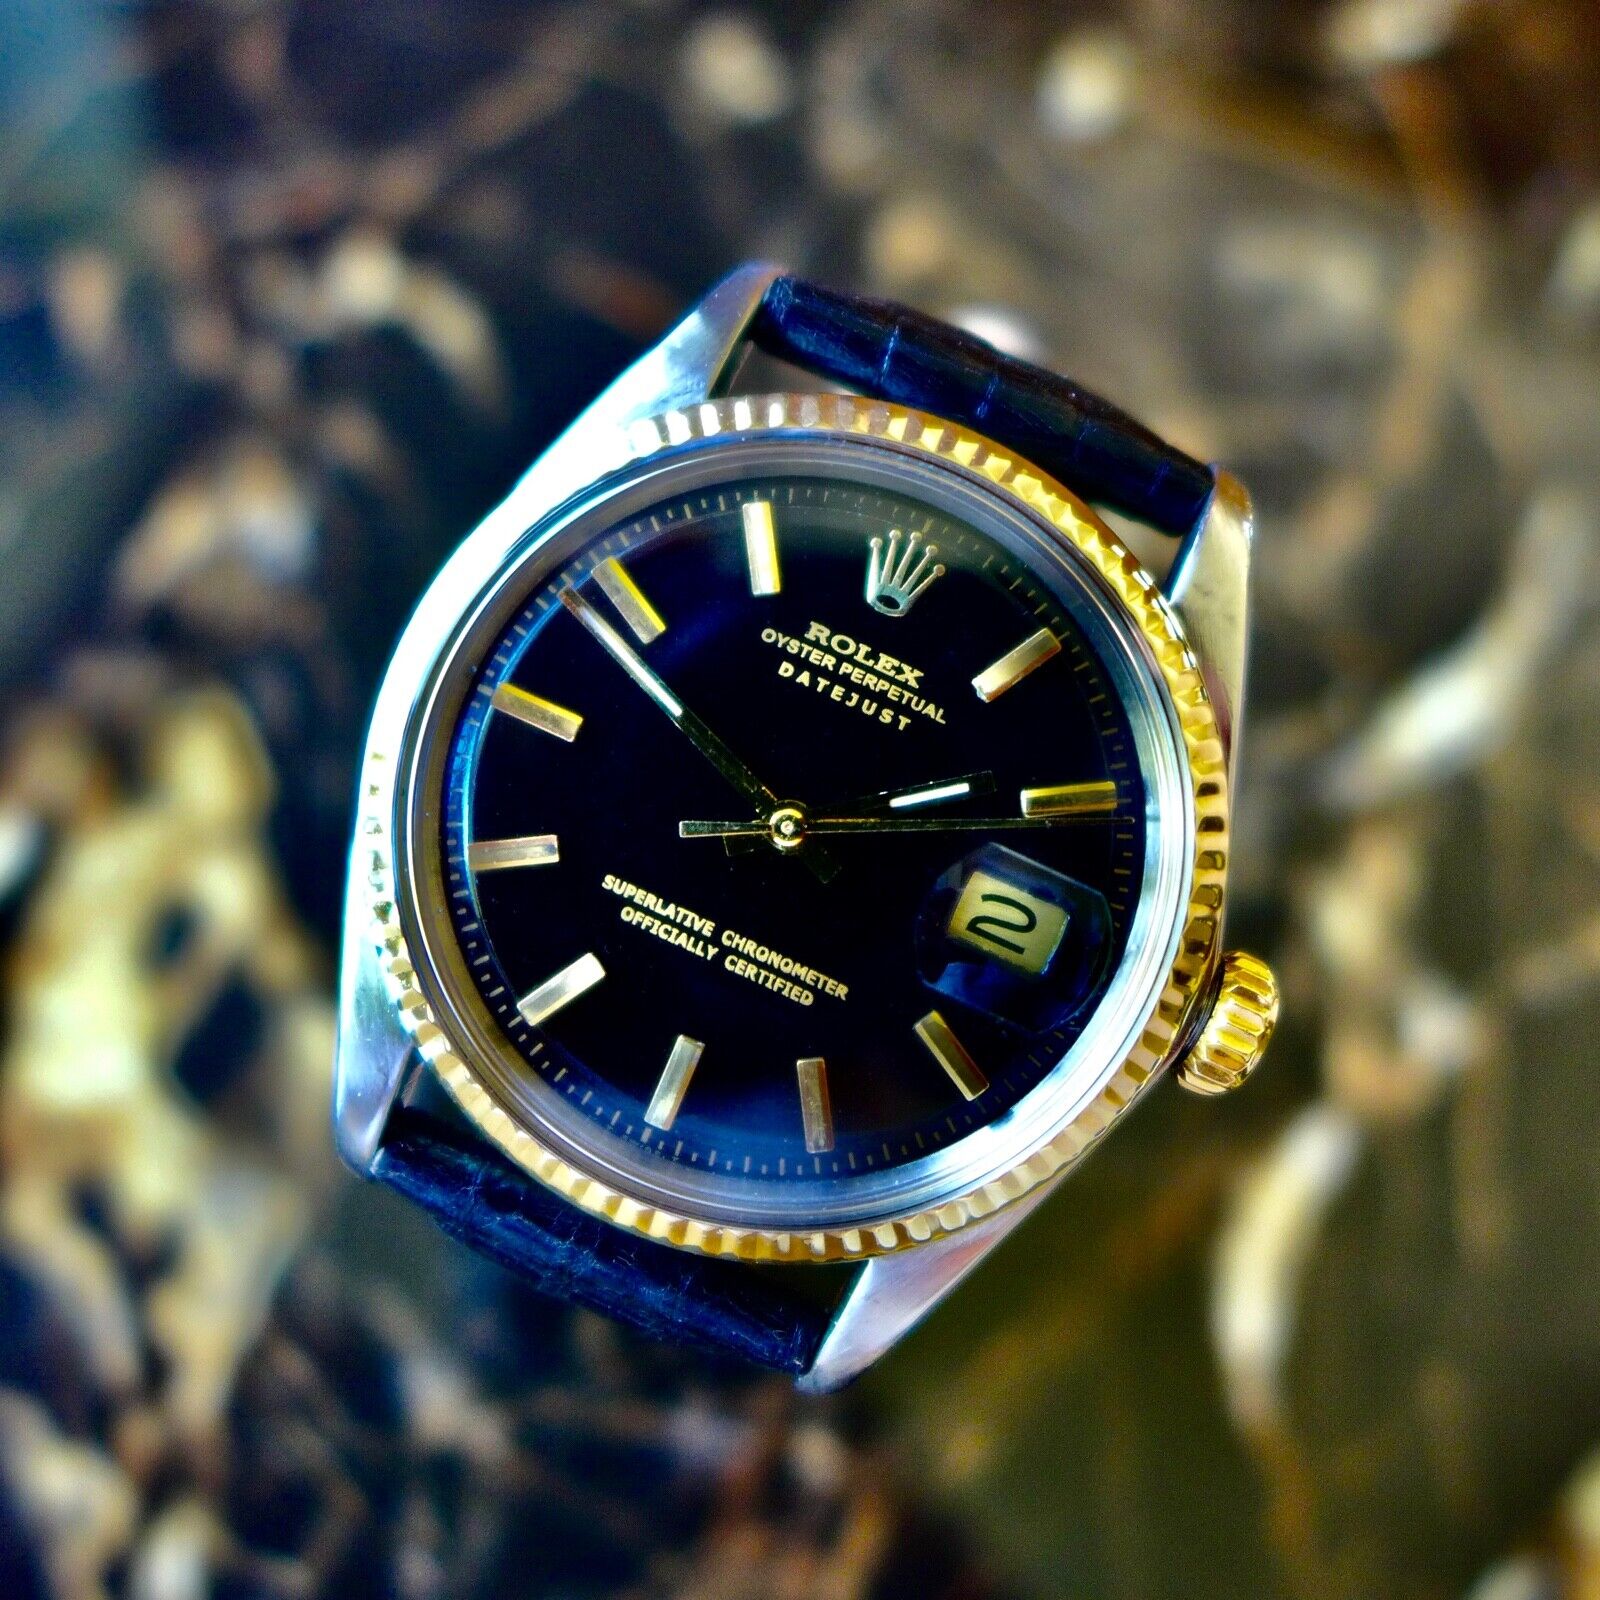 ROLEX デイトジャスト Ref.1601 ブラック アンティーク品 メンズ 腕時計